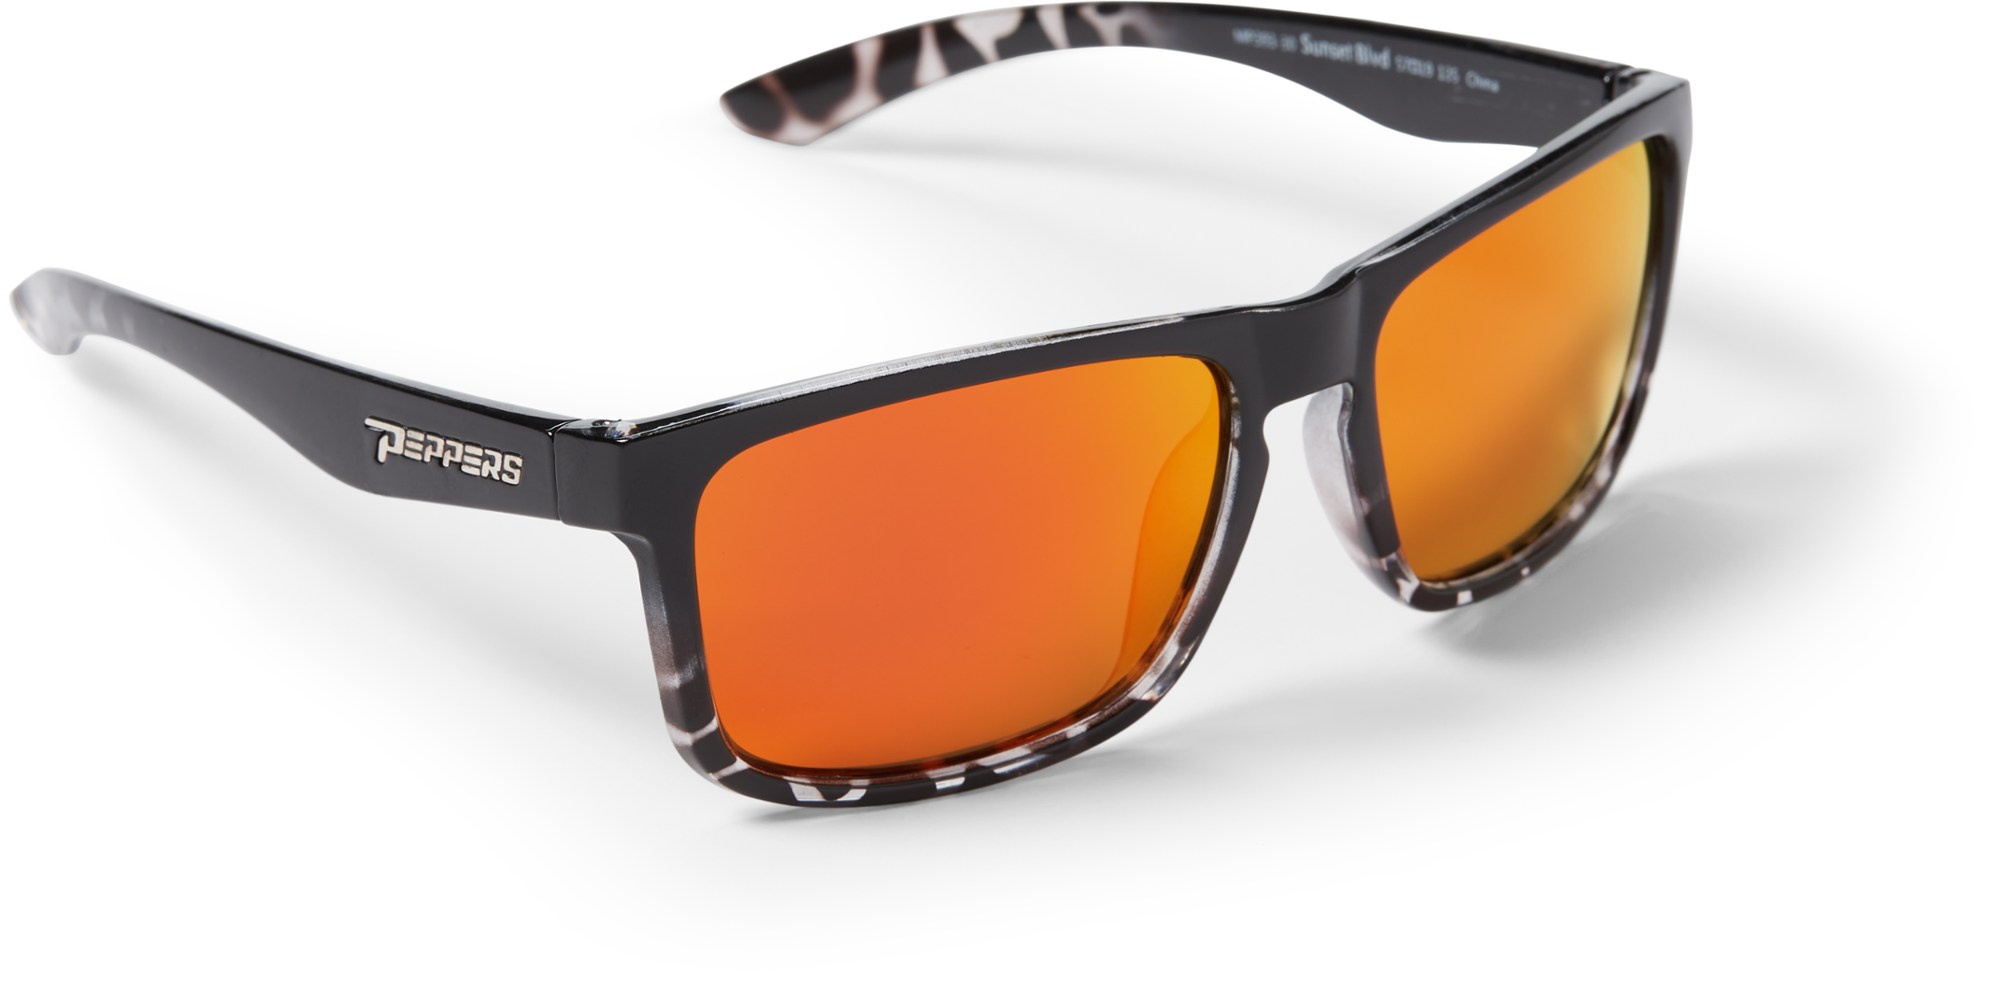 Поляризационные солнцезащитные очки Sunset Blvd Pepper's, черный